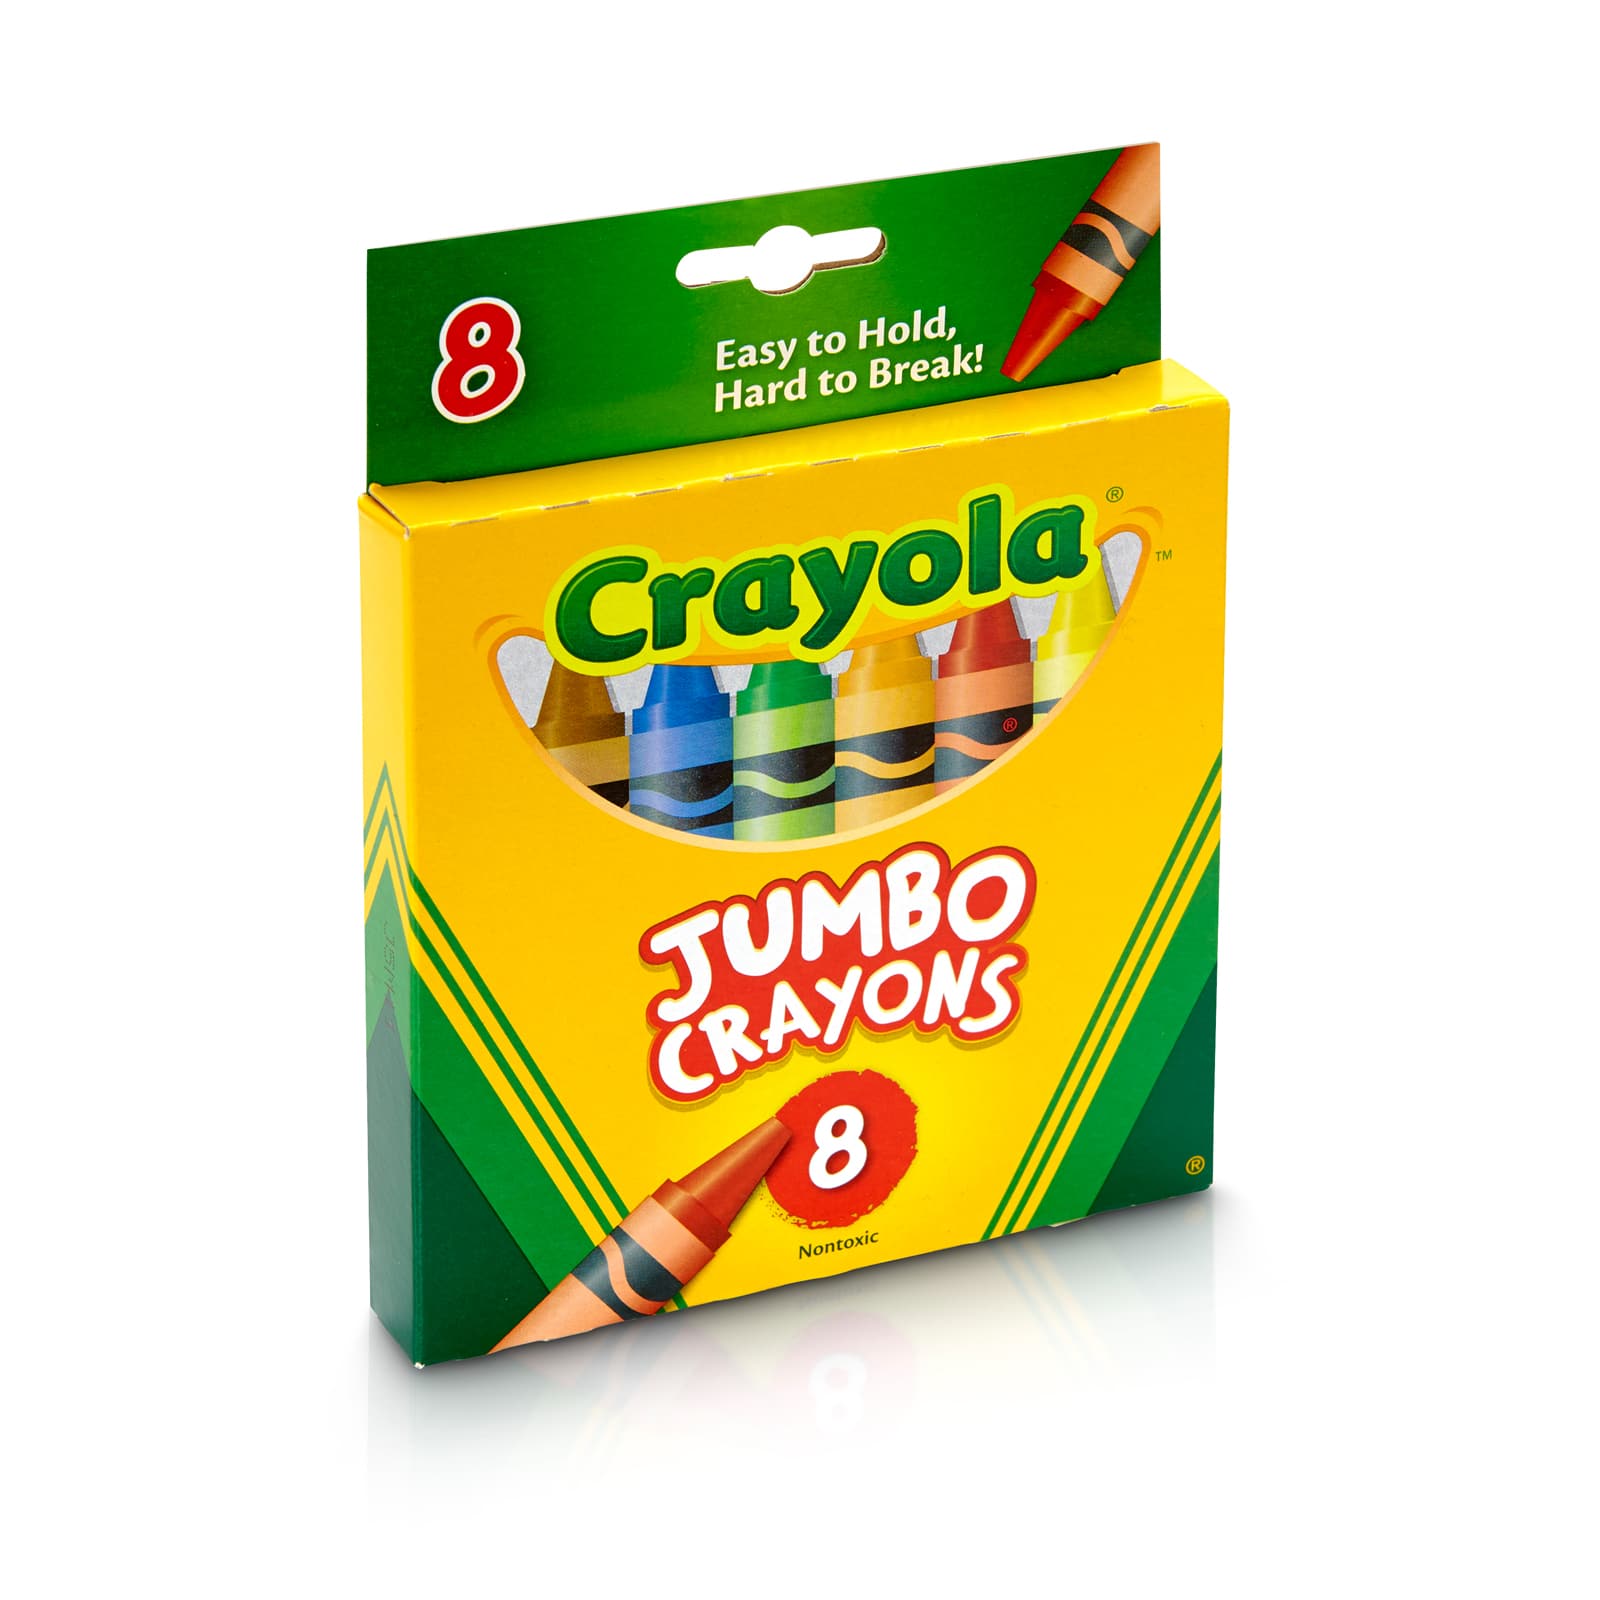 Kids PARTY FAVOR Crayons // Diamond Party Favor Crayons // Crayon